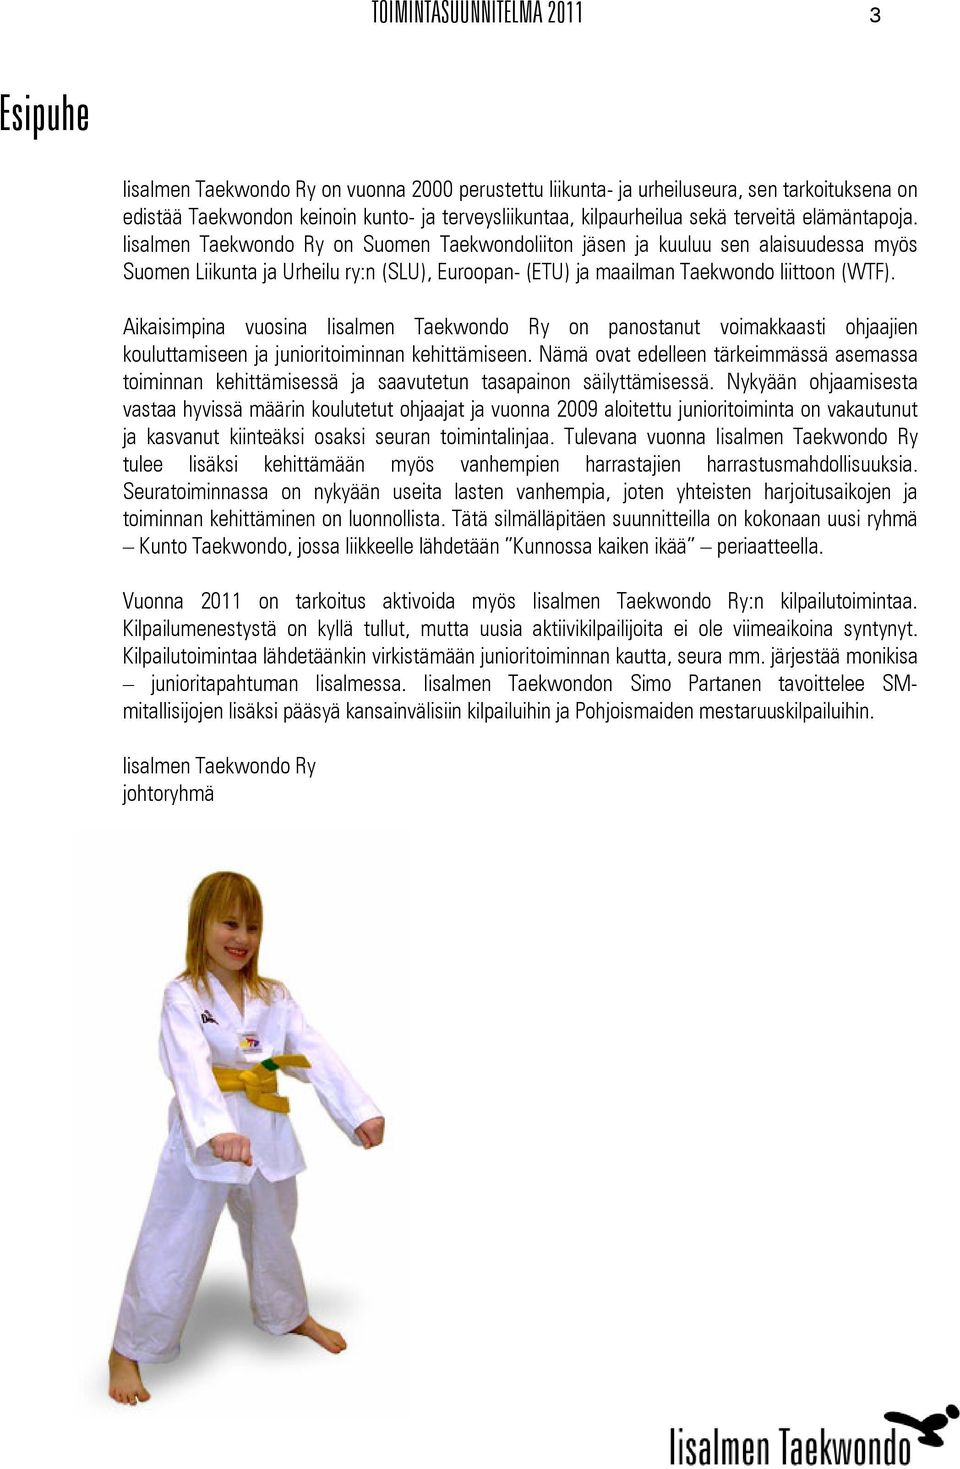 Iisalmen Taekwondo Ry on Suomen Taekwondoliiton jäsen ja kuuluu sen alaisuudessa myös Suomen Liikunta ja Urheilu ry:n (SLU), Euroopan- (ETU) ja maailman Taekwondo liittoon (WTF).